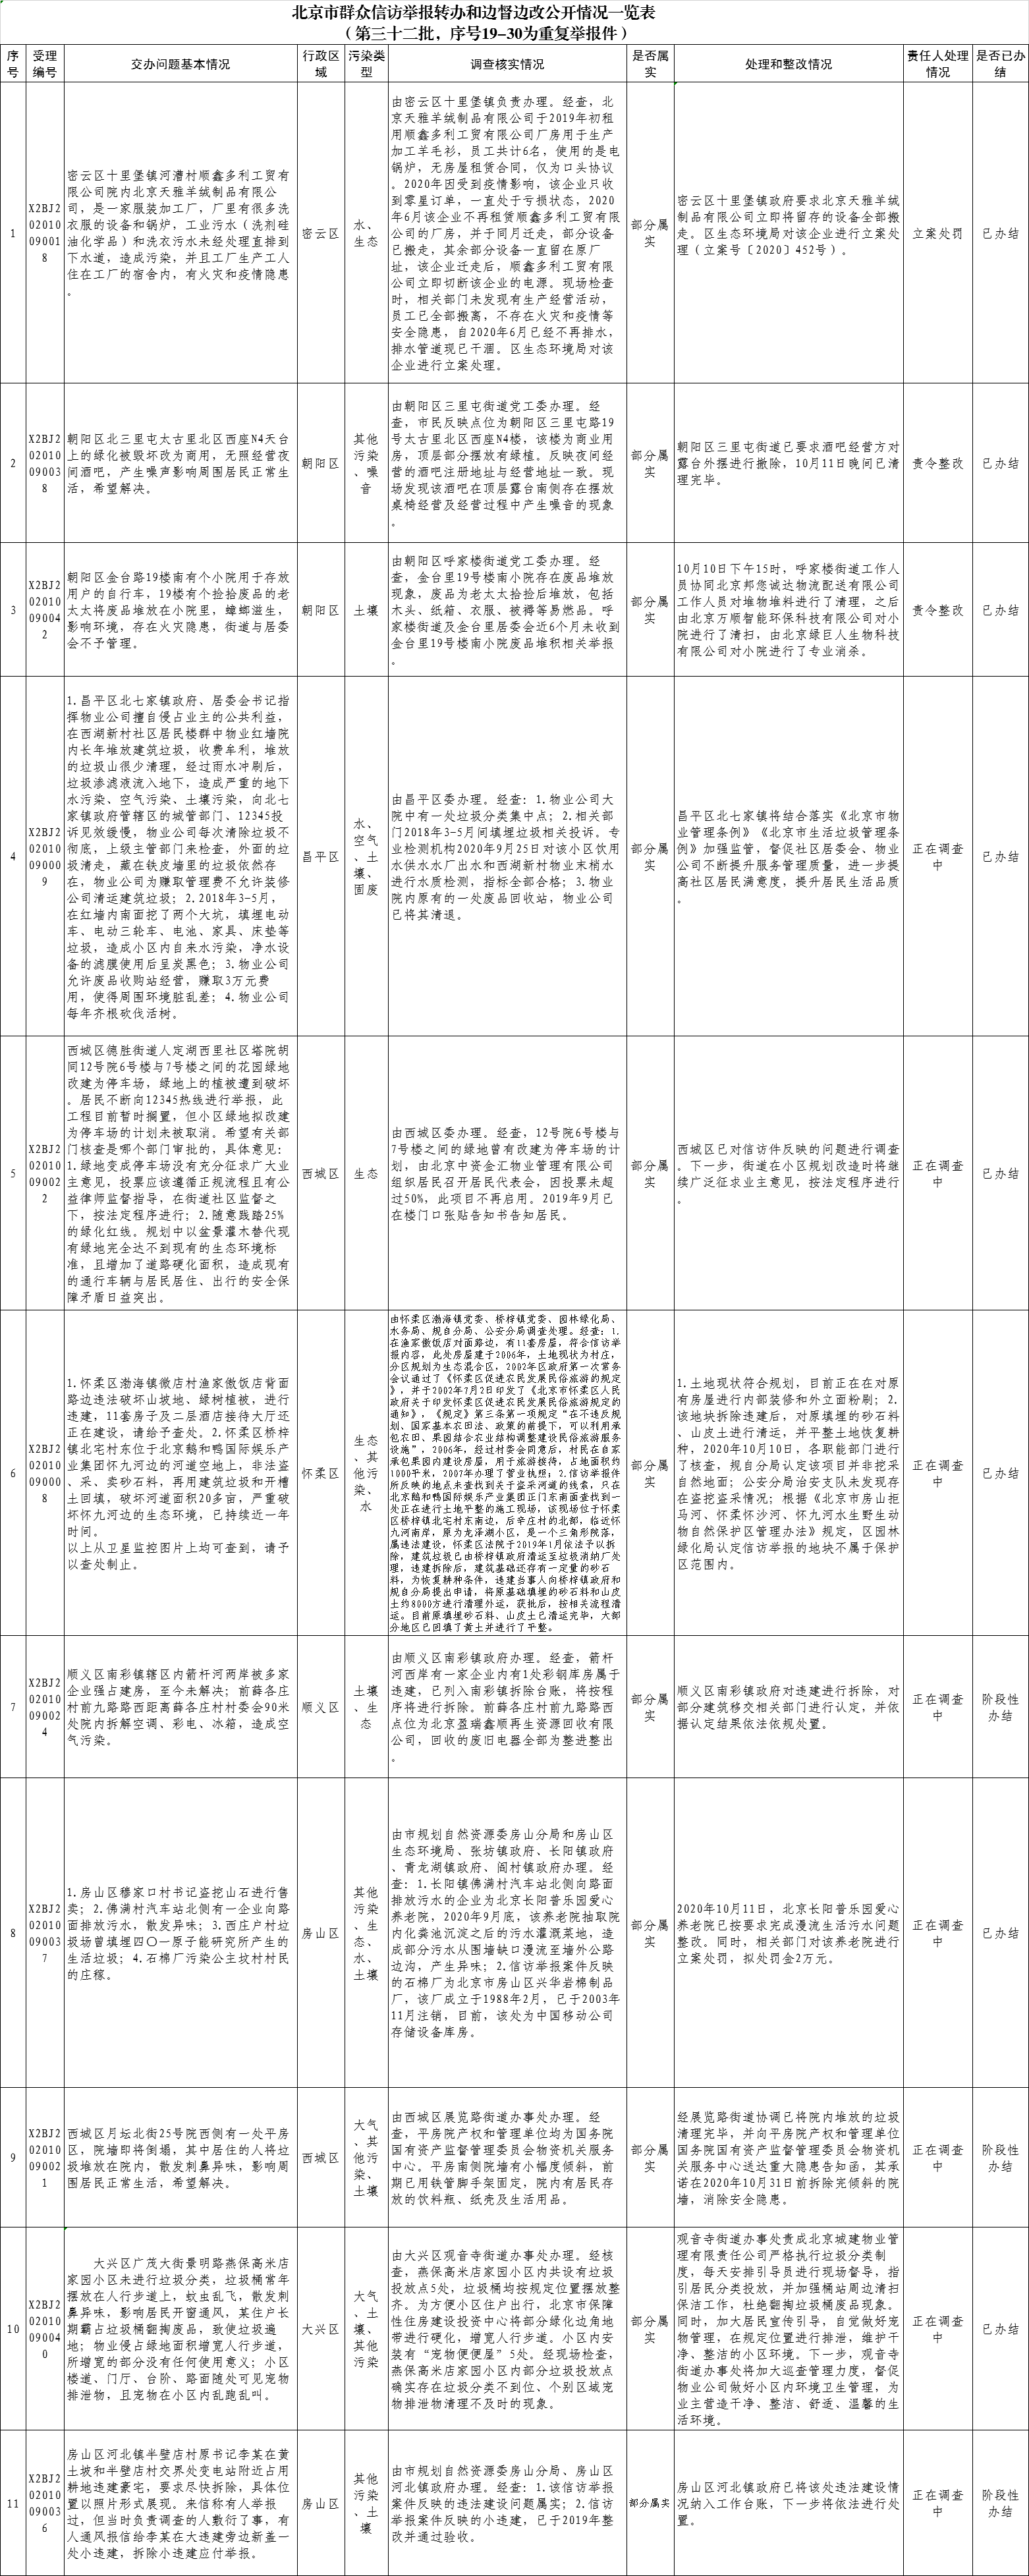 北京市群眾信訪舉報轉辦和邊督邊改公開情況一覽表(第三十二批)